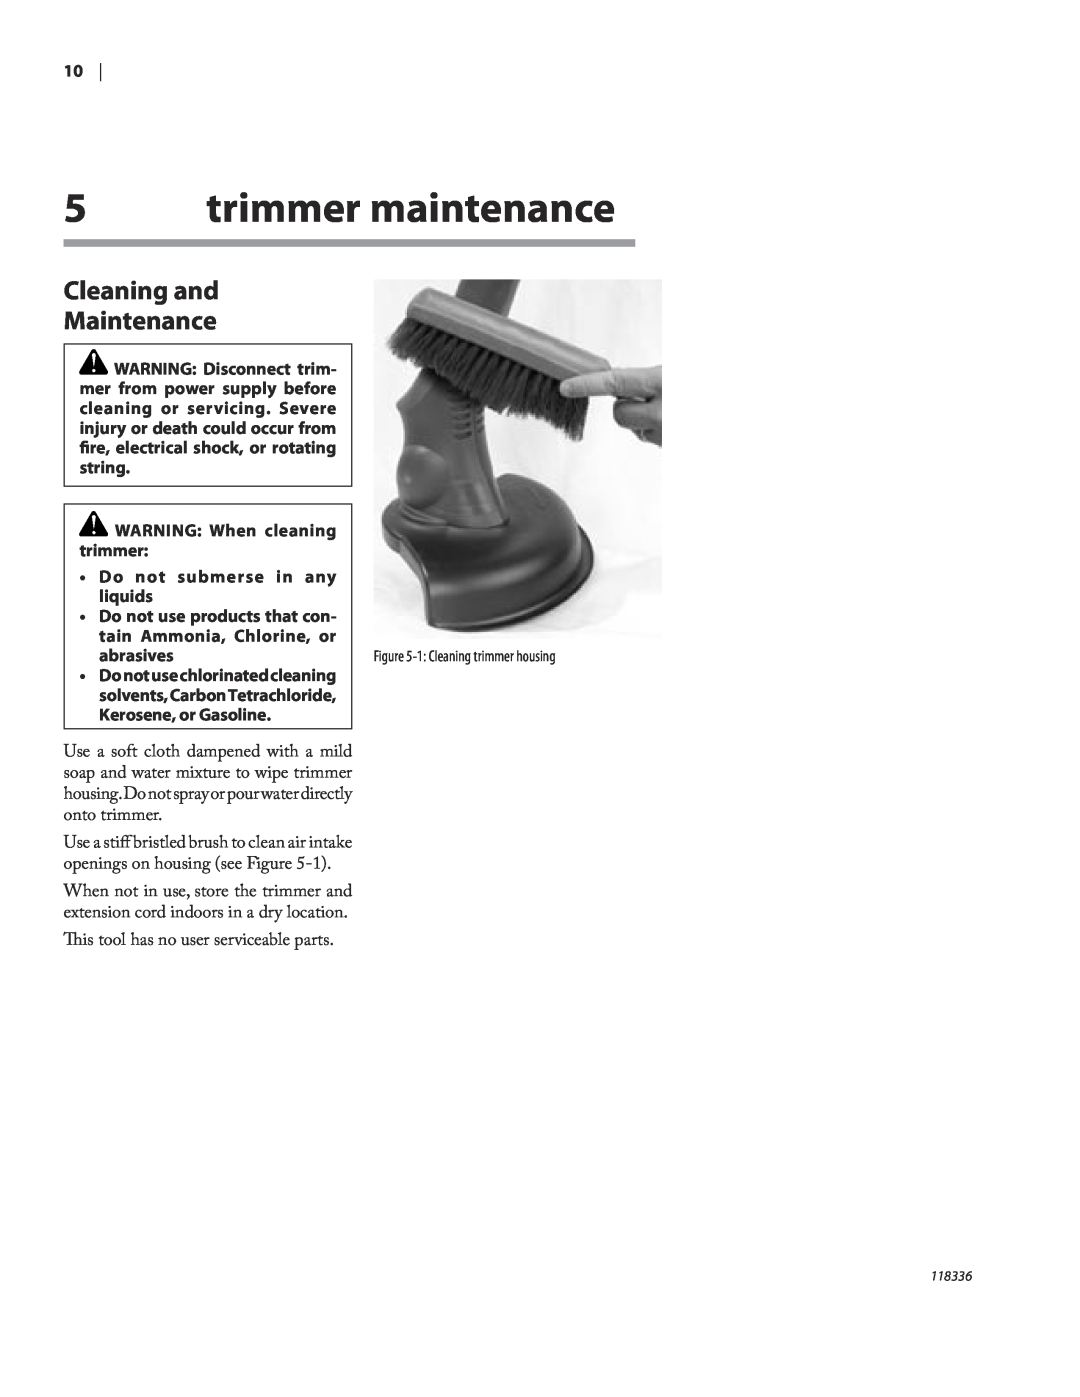 Remington ST3010A owner manual trimmer maintenance, Cleaning and Maintenance, WARNING When cleaning trimmer, abrasives 